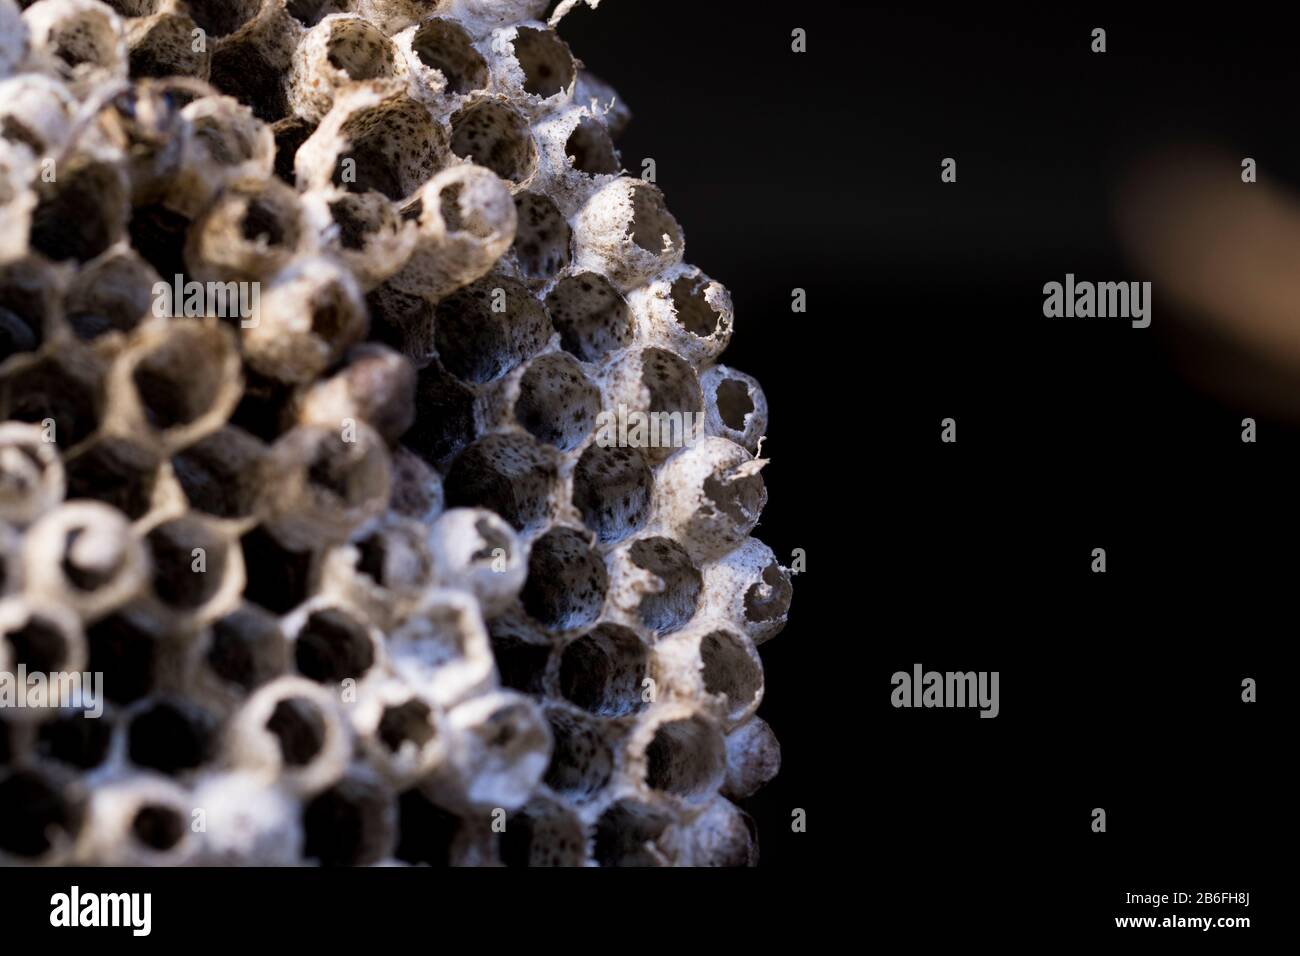 Wabenpatter Nahaufnahme der Makroansicht von Bienen oder Wespennest. Sechseckiges Muster in der Natur gefunden. Leeres Hornetnest. Stockfoto